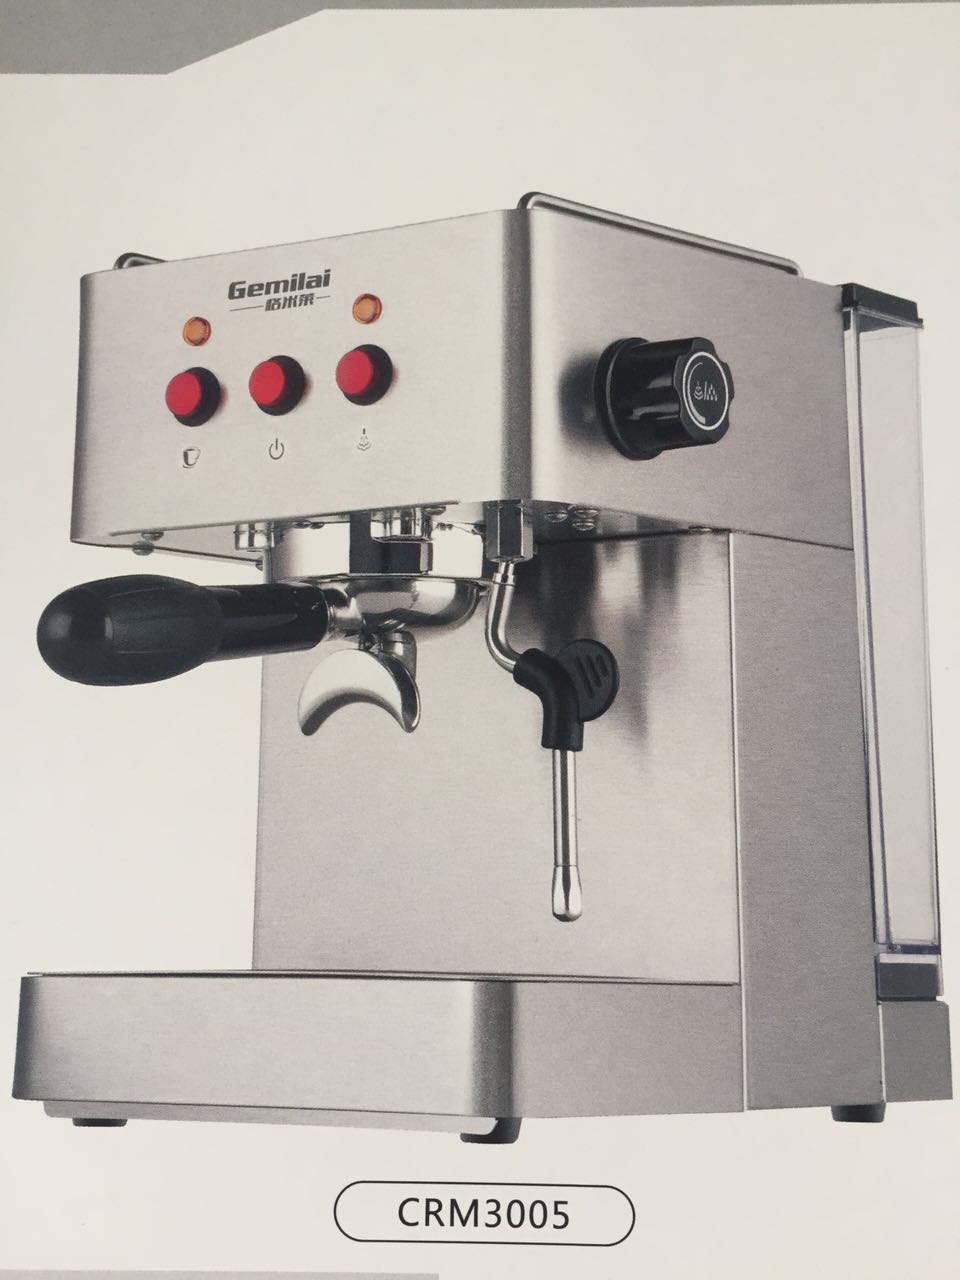 意式家用咖啡机格米莱品牌介绍：Gemilai格米莱CRM3005家用咖啡机